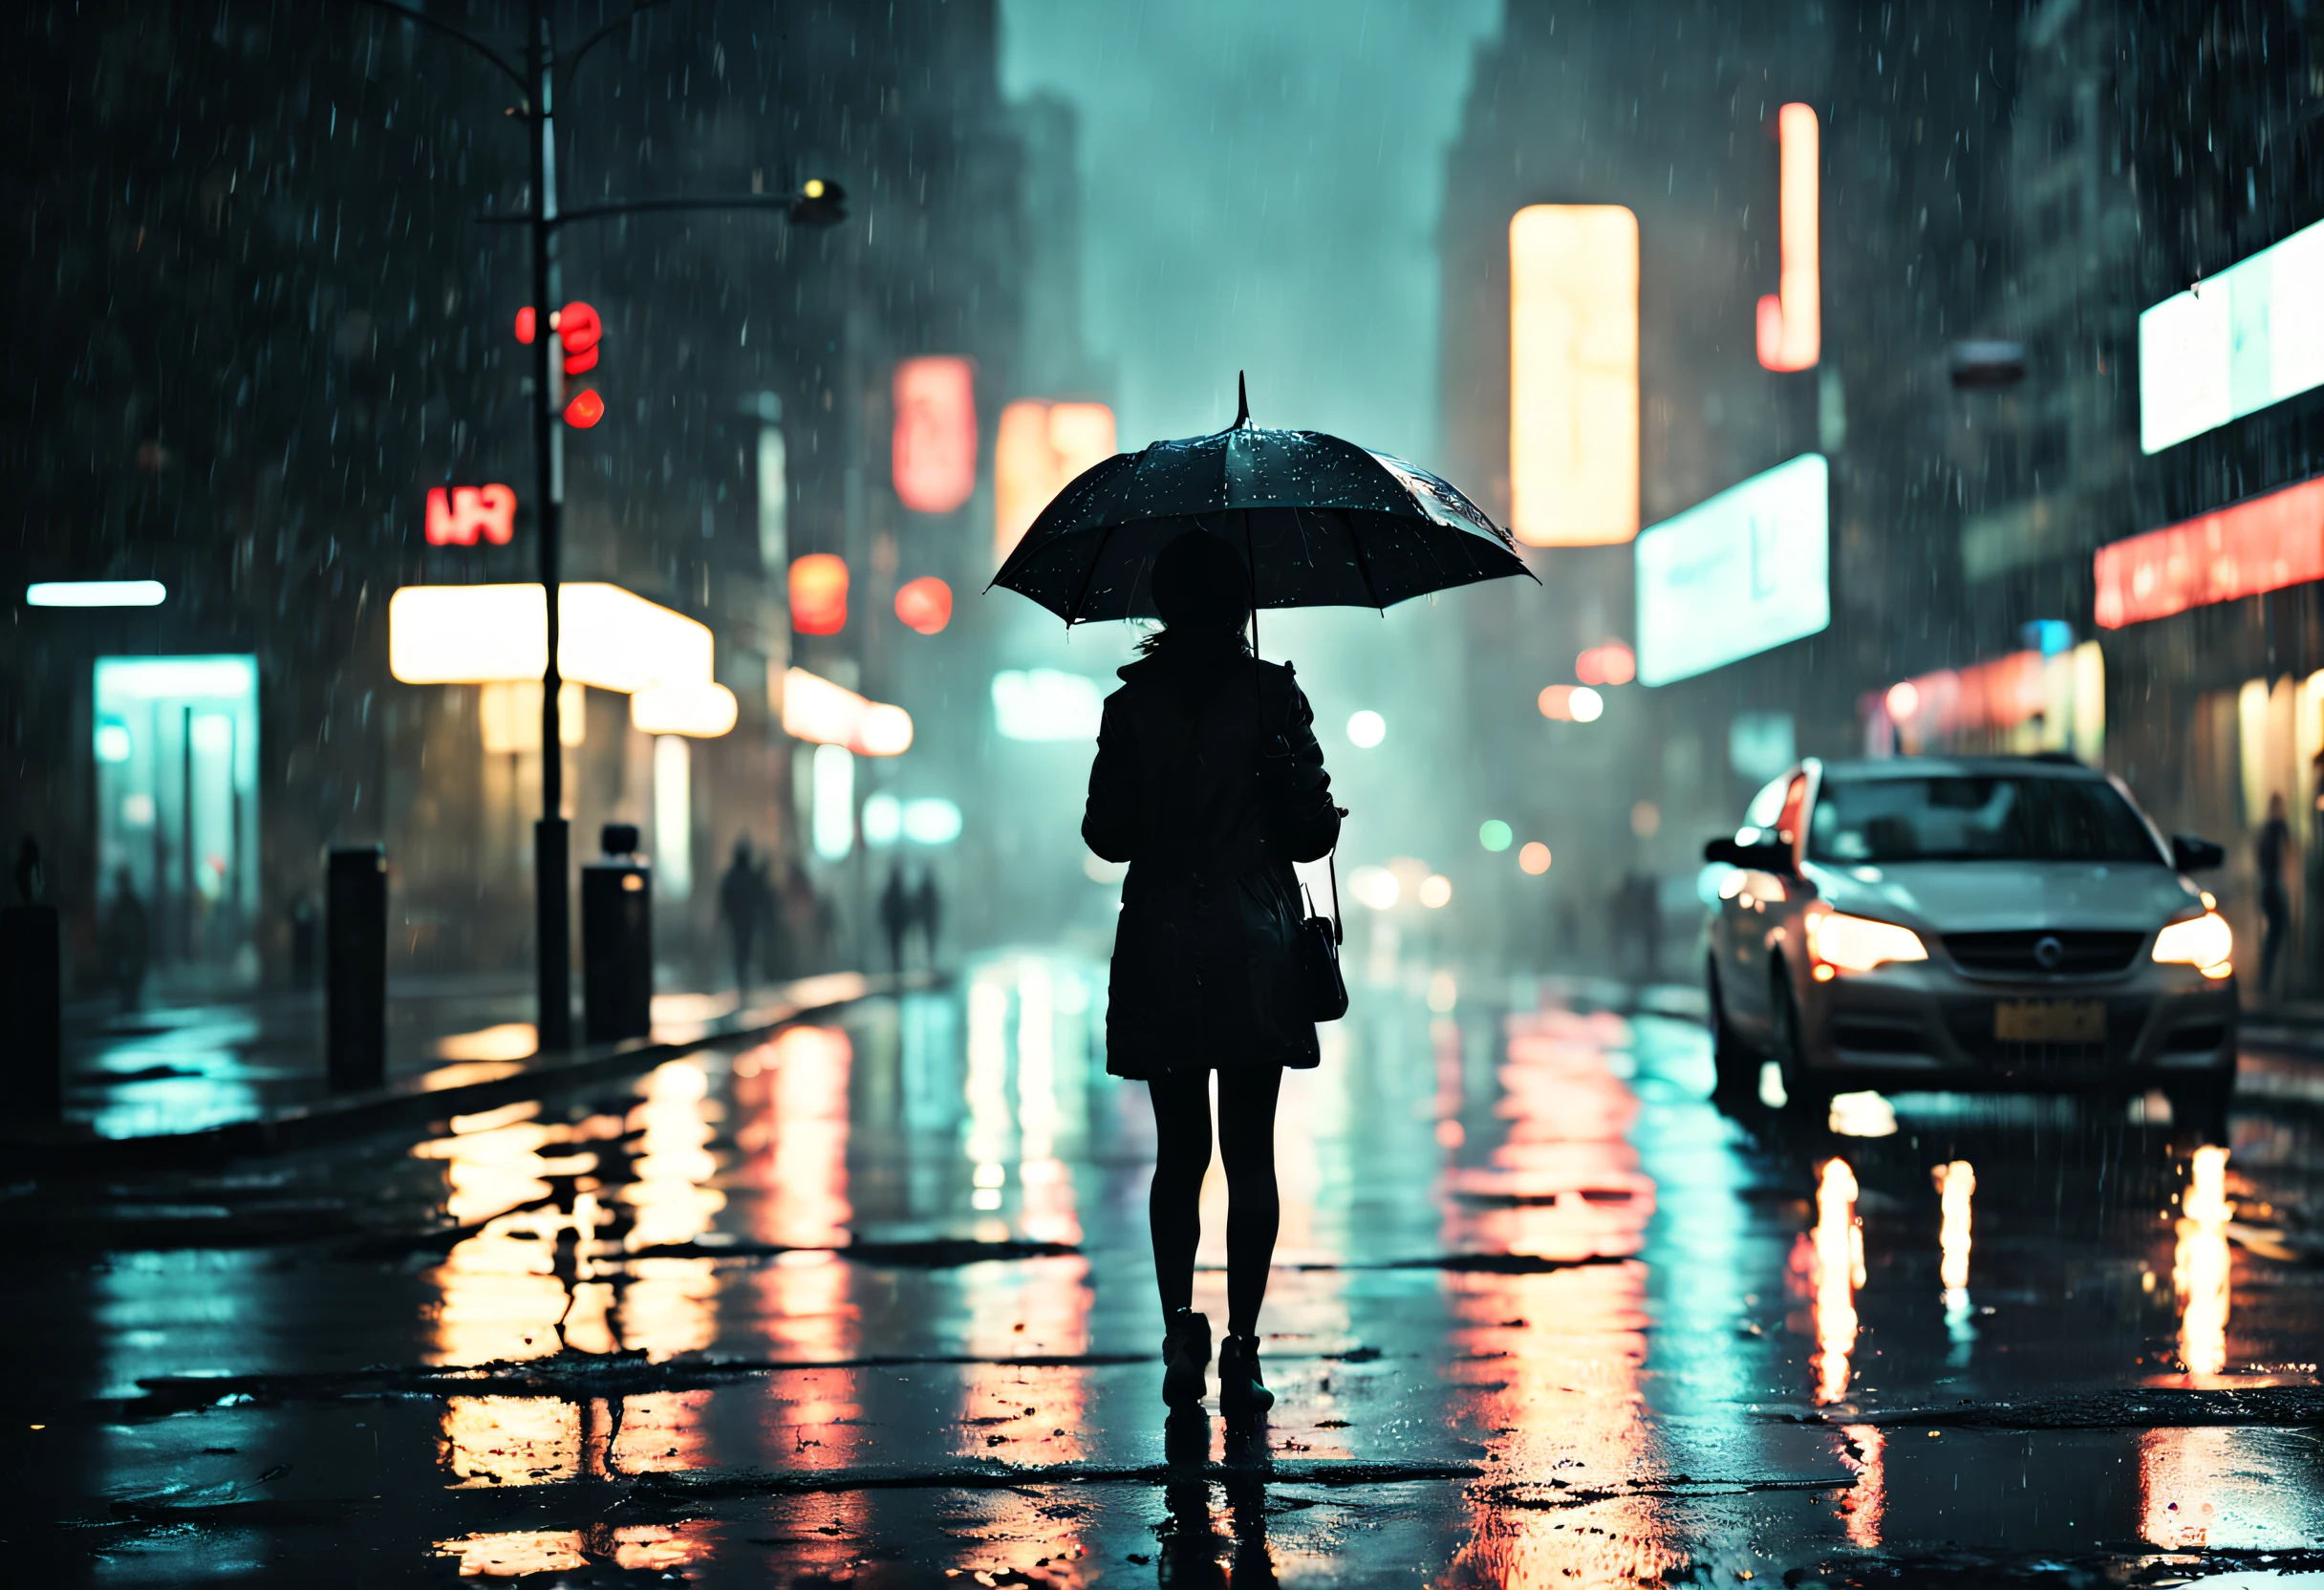 uma garota parada sob um guarda-chuva pingando em uma rua mal iluminada,gotas de chuva brilhando na calçada molhada,brilho quente que emana das luzes da rua,reflexos de letreiros de néon nas poças,pessoas correndo com guarda-chuvas, o som das gotas de chuva batendo no guarda-chuva, folhas molhadas espalhadas no chão, atmosfera enevoada, a silhueta da menina destacada pelas luzes da rua, rainy paisagem urbana at night, iluminação cinematográfica e temperamental, contraste dramático entre claro e escuro, uma sensação de mistério e solidão, texturas molhadas e brilhantes, paleta de cores frias e dessaturadas, estilo de arte impressionista e sonhador. (melhor qualidade, 4K, ultra-detalhado, realista:1.37), noite chuvosa, paisagem urbana, iluminação cinematográfica, Texturas úmidas, atmosfera temperamental, estilo de arte impressionista